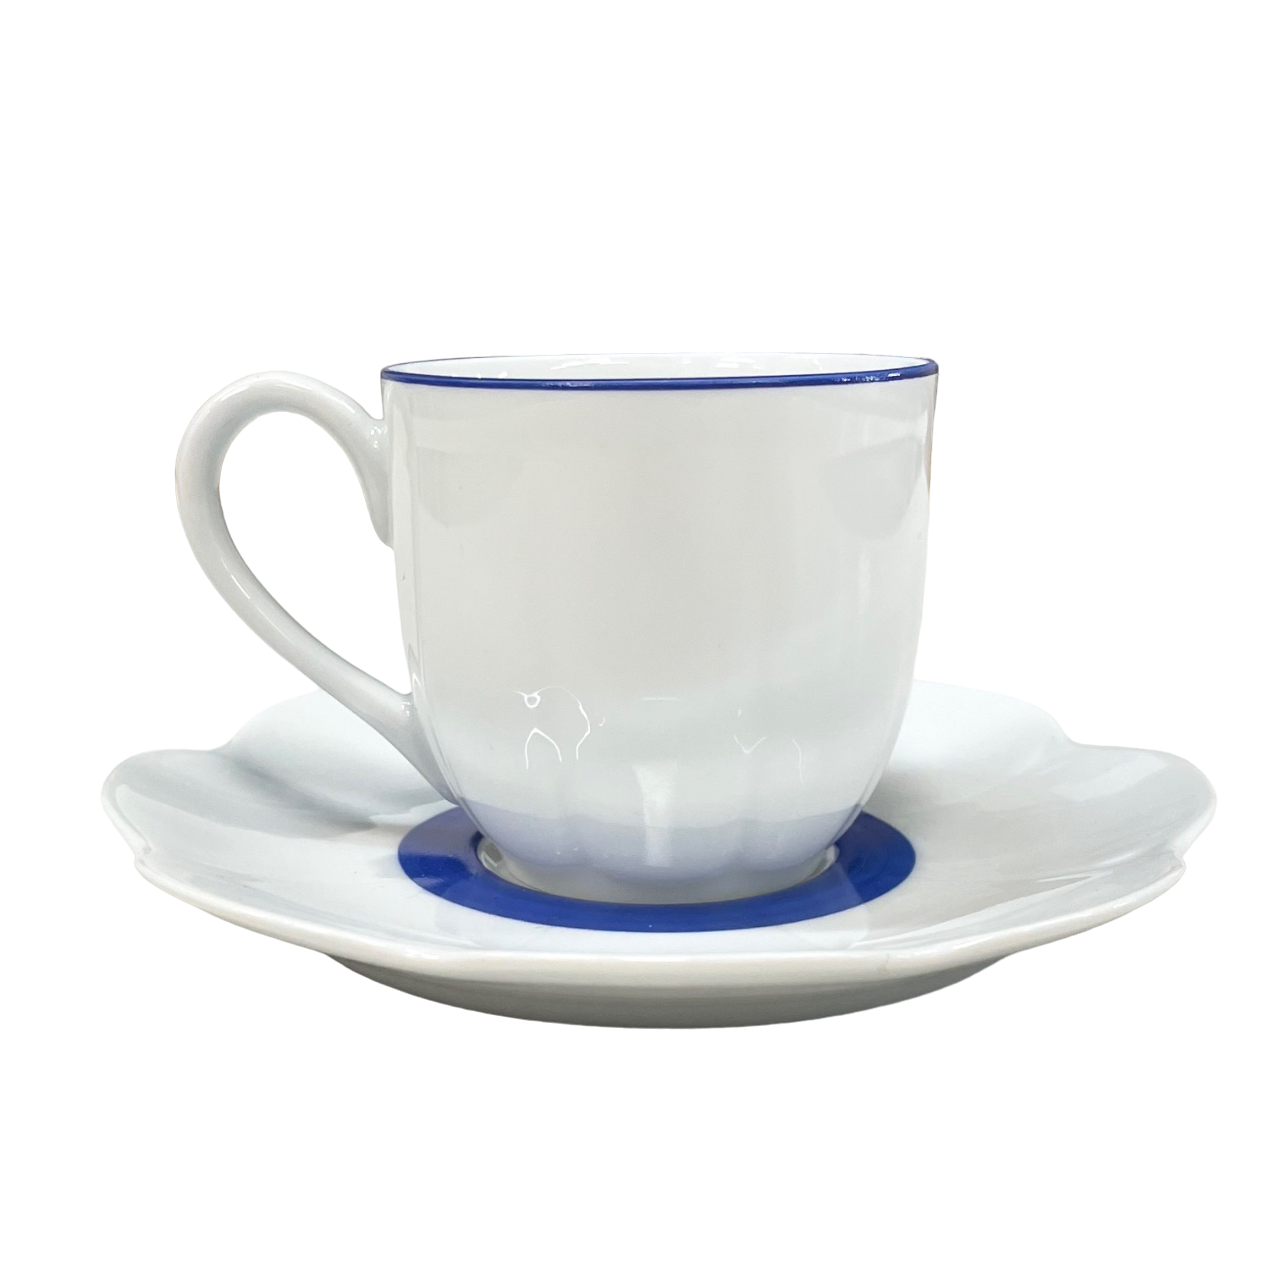 Fleur't bleu - Tasse et soucoupe café 0.10 litre